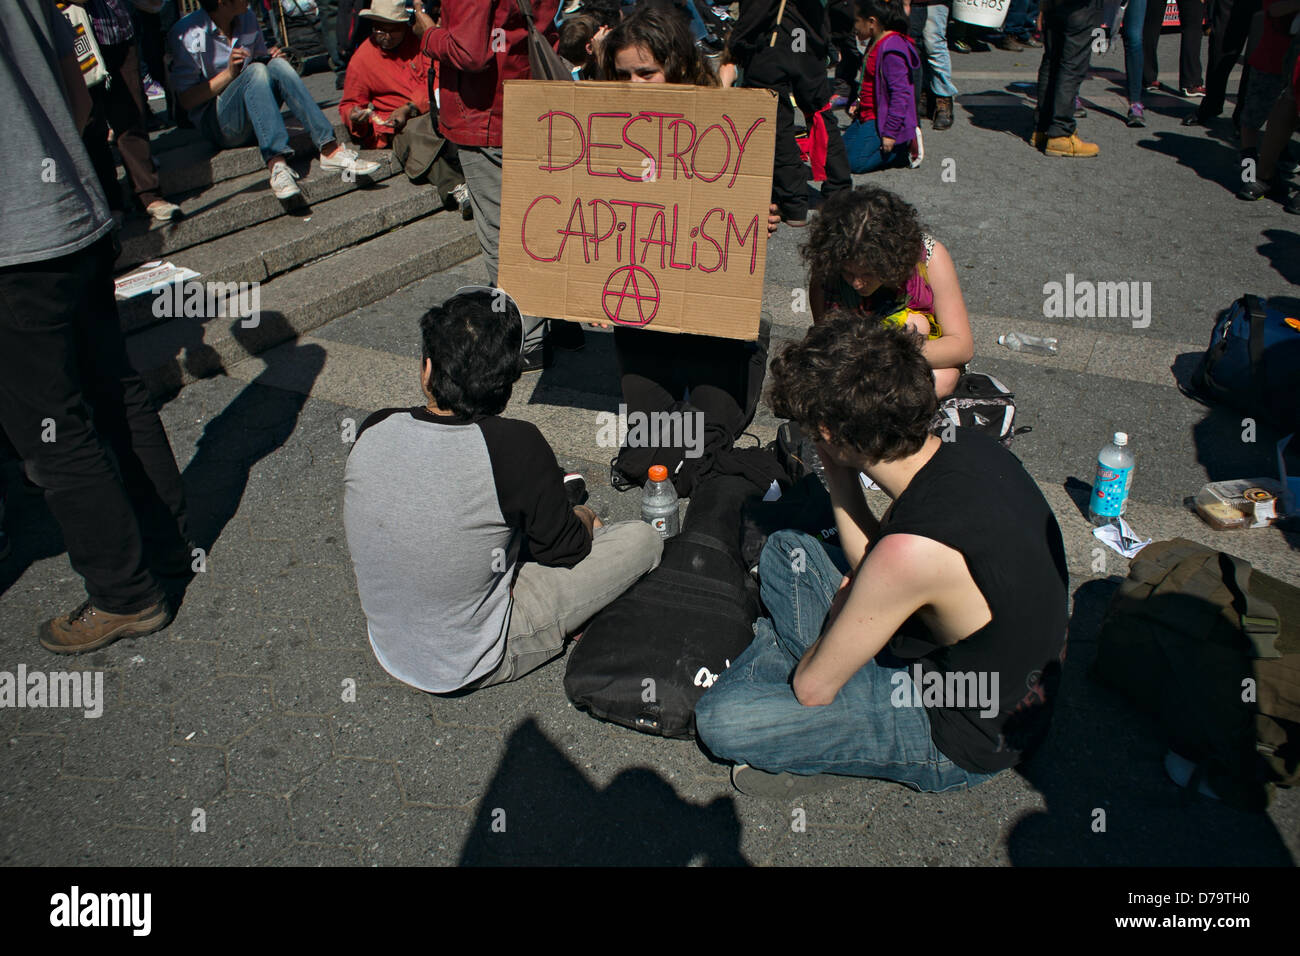 Miércoles, 1 de mayo de 2013, Nueva York, NY, EEUU: Una mujer sostiene un cartel destruy el capitalismo", mientras los manifestantes se reúnen en la plaza Union Square de Nueva York para conmemorar el Día Internacional del Trabajador, también conocido como May Day. Foto de stock